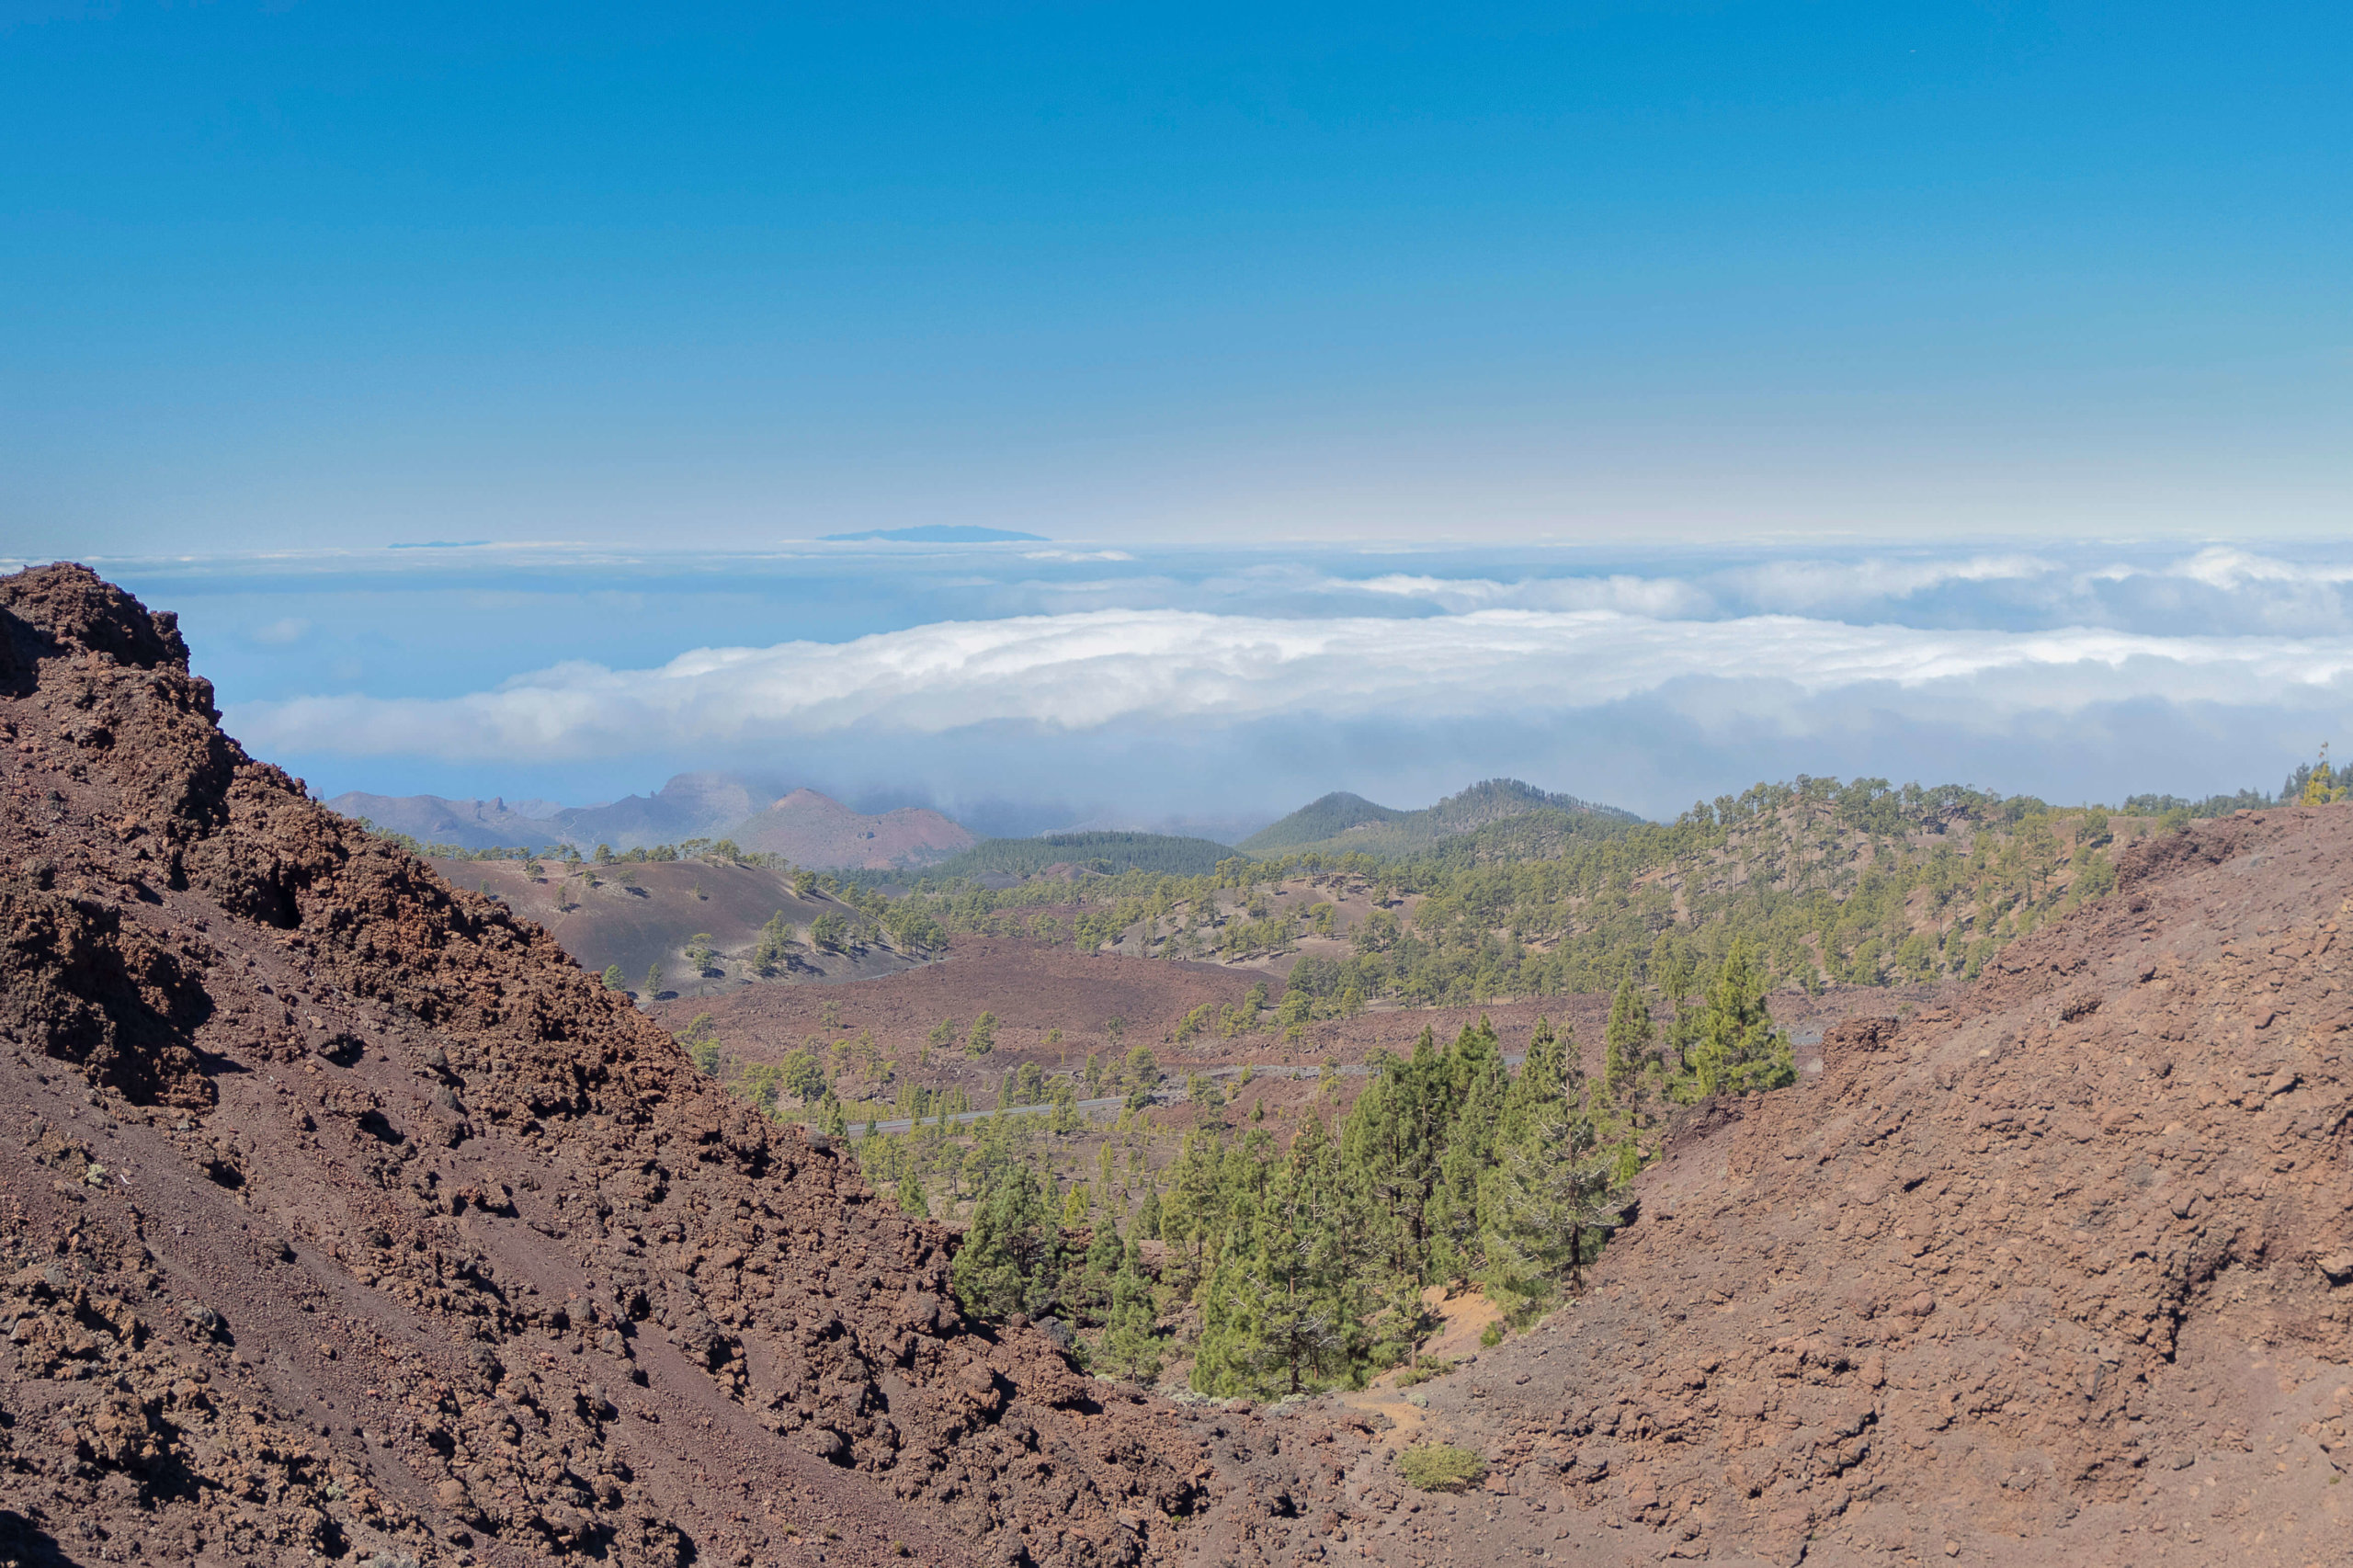 Cráter de Montaña Samara sobre la vertiente oeste de Tenerife: vistas hacia el Volcán Chinyero, el macizo de Teno y La Gomera.